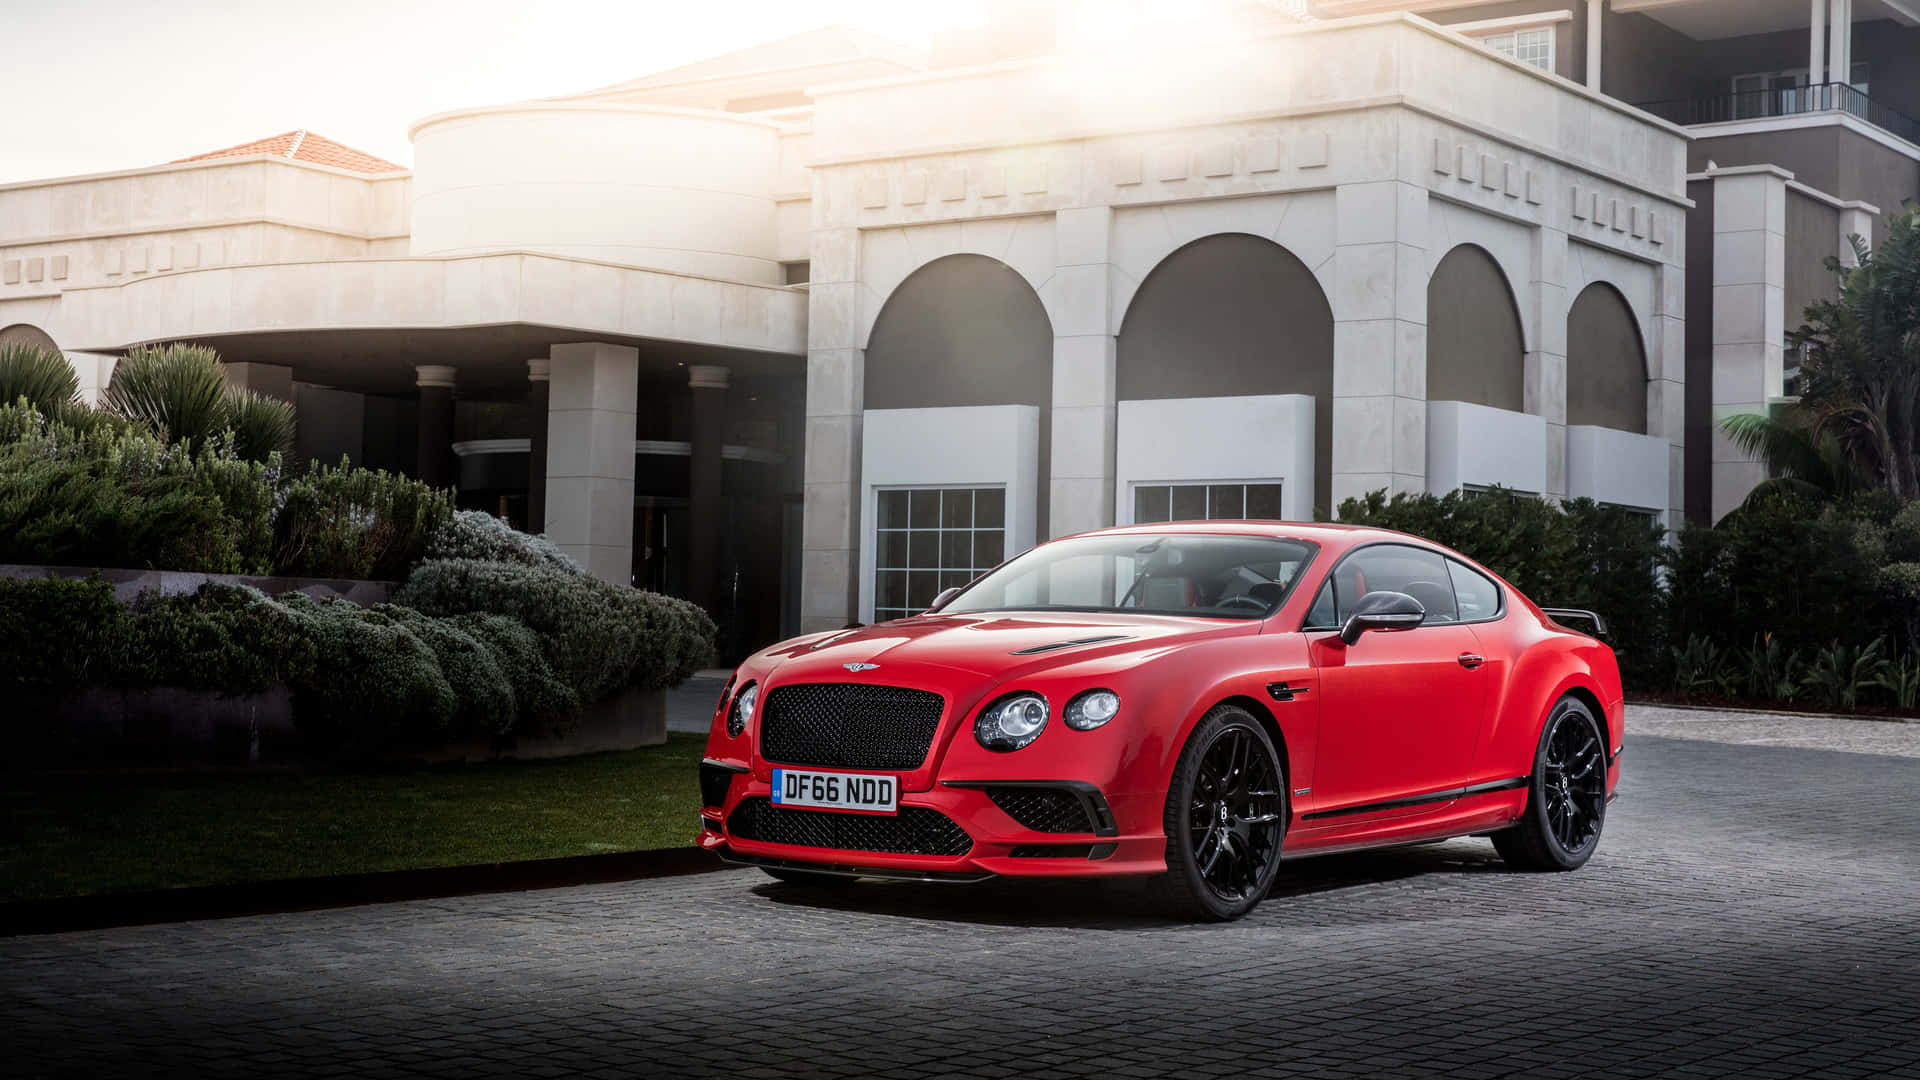 Explore Luxury and Comfort in a Bentley